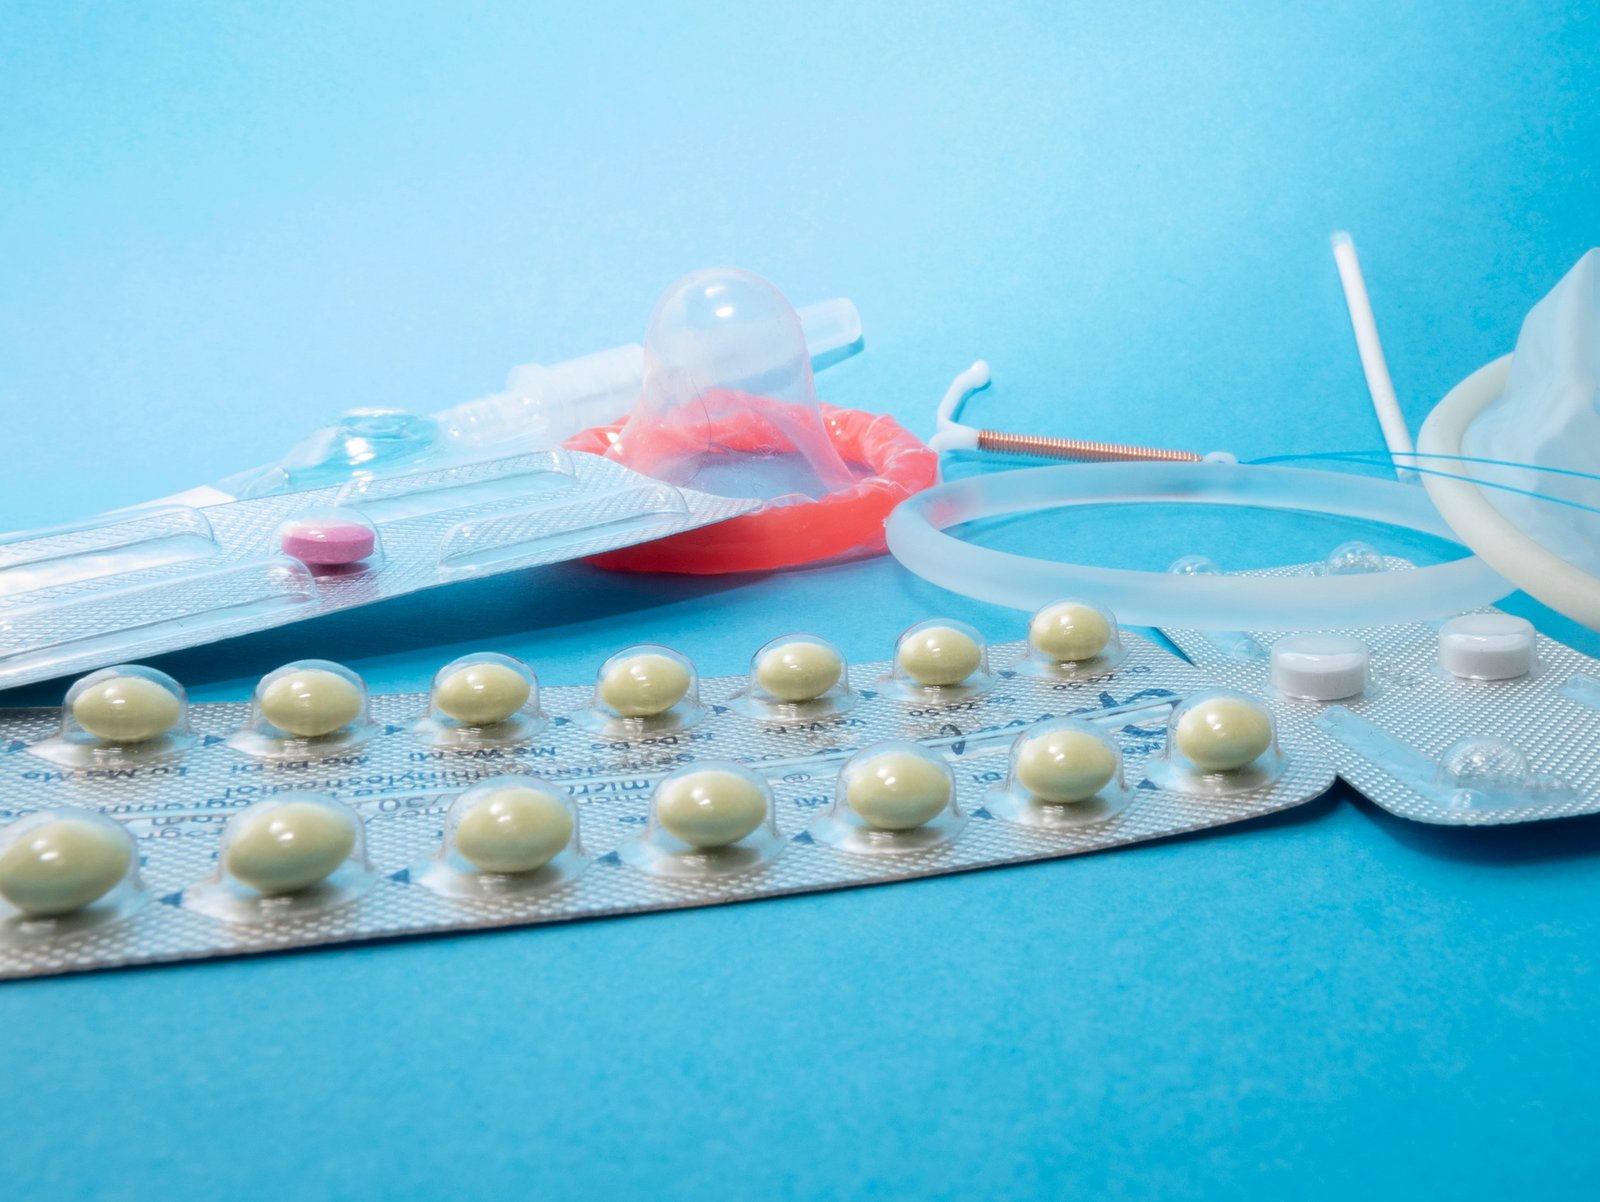 Презерватив, противозачатъчно хапче и други контрацептиви